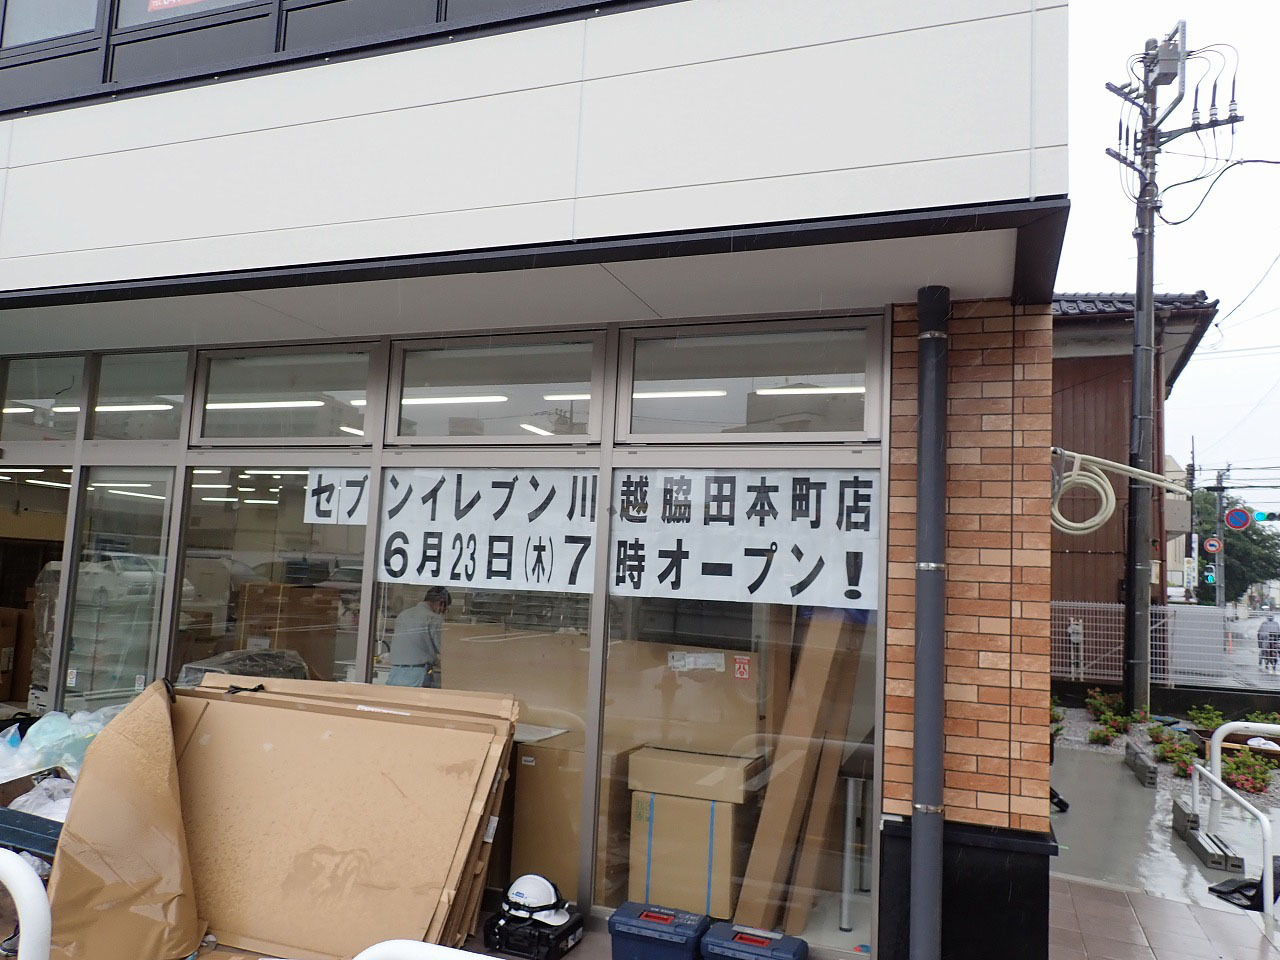 「セブン-イレブン」の川越脇田本町店のオープン予定日は2022年6月23日です